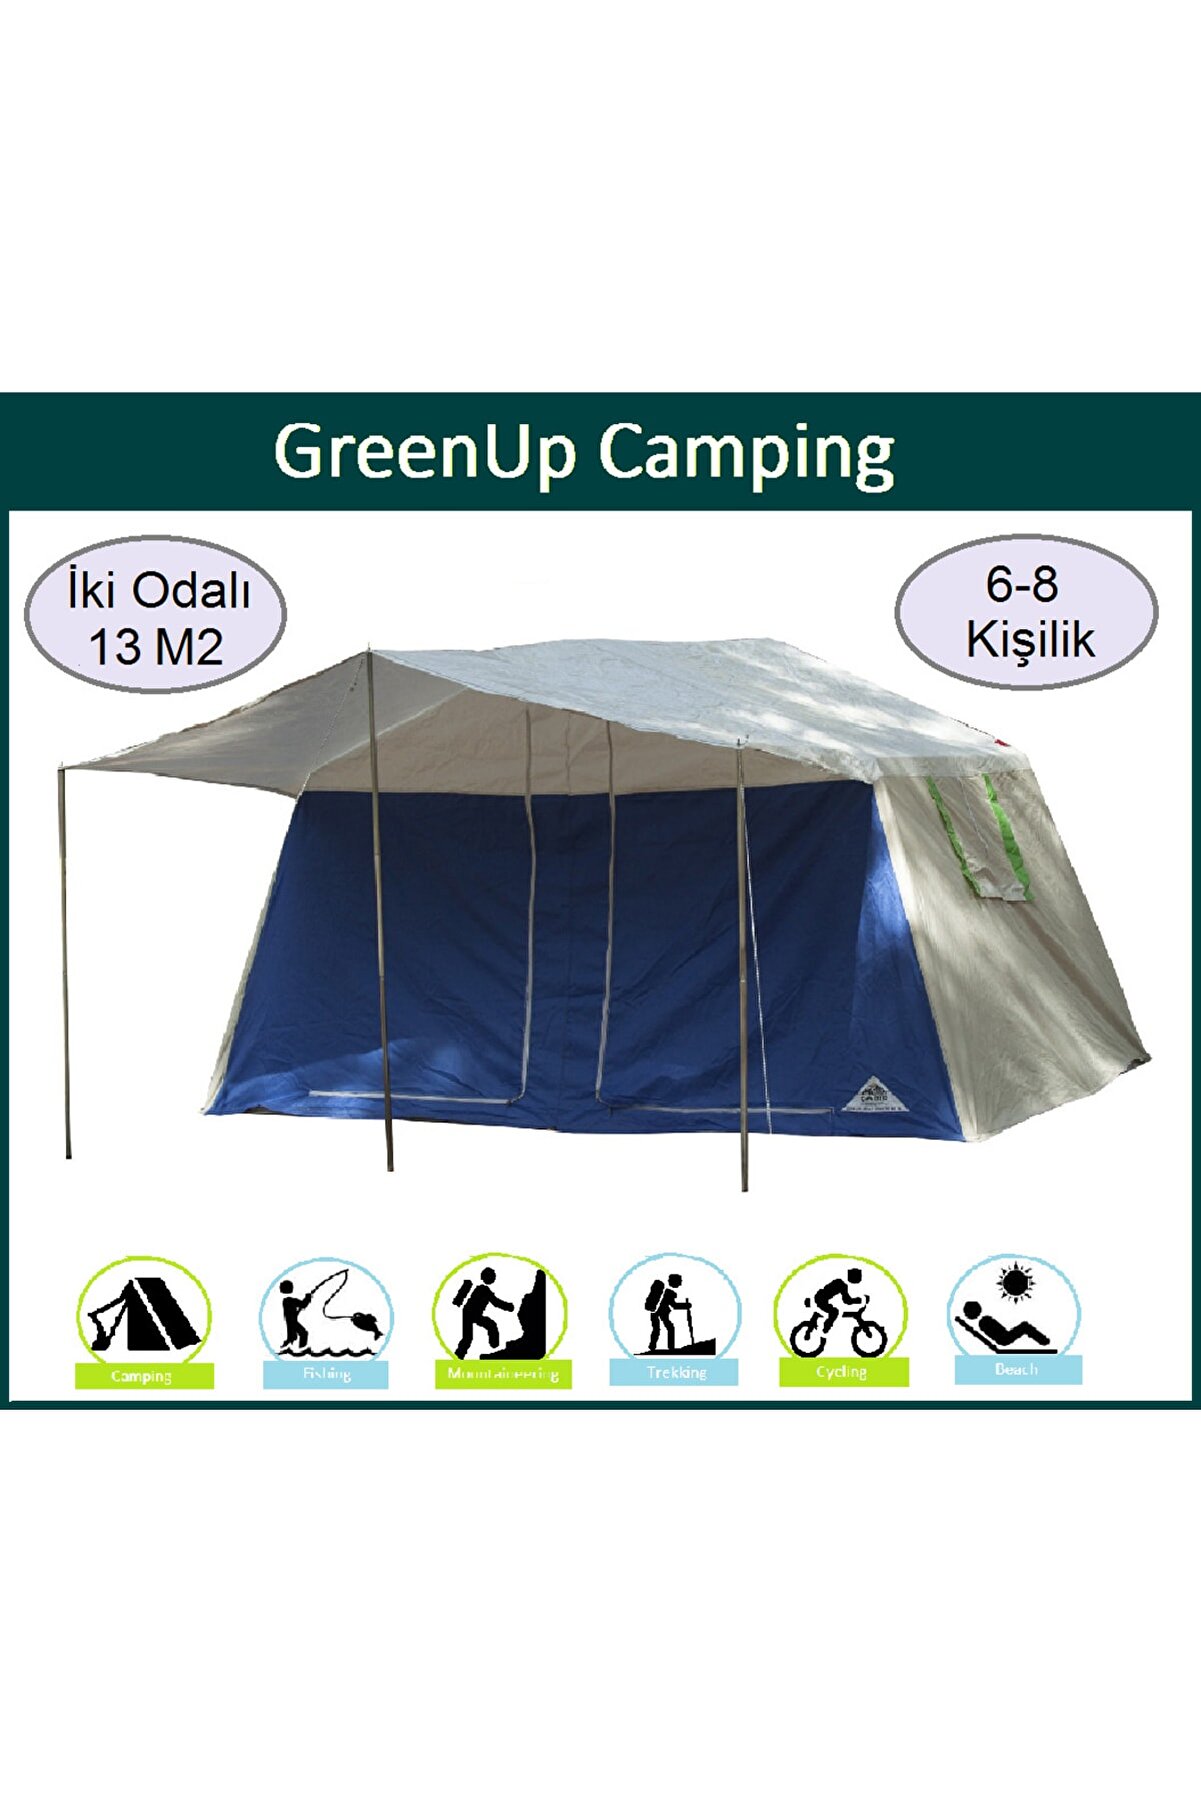 GreenUp Camping Iki Odalı Çadır Kamp Afet Balıkçılık Trekking Çadırı 13 M2 Çadır Kolay Kurulum